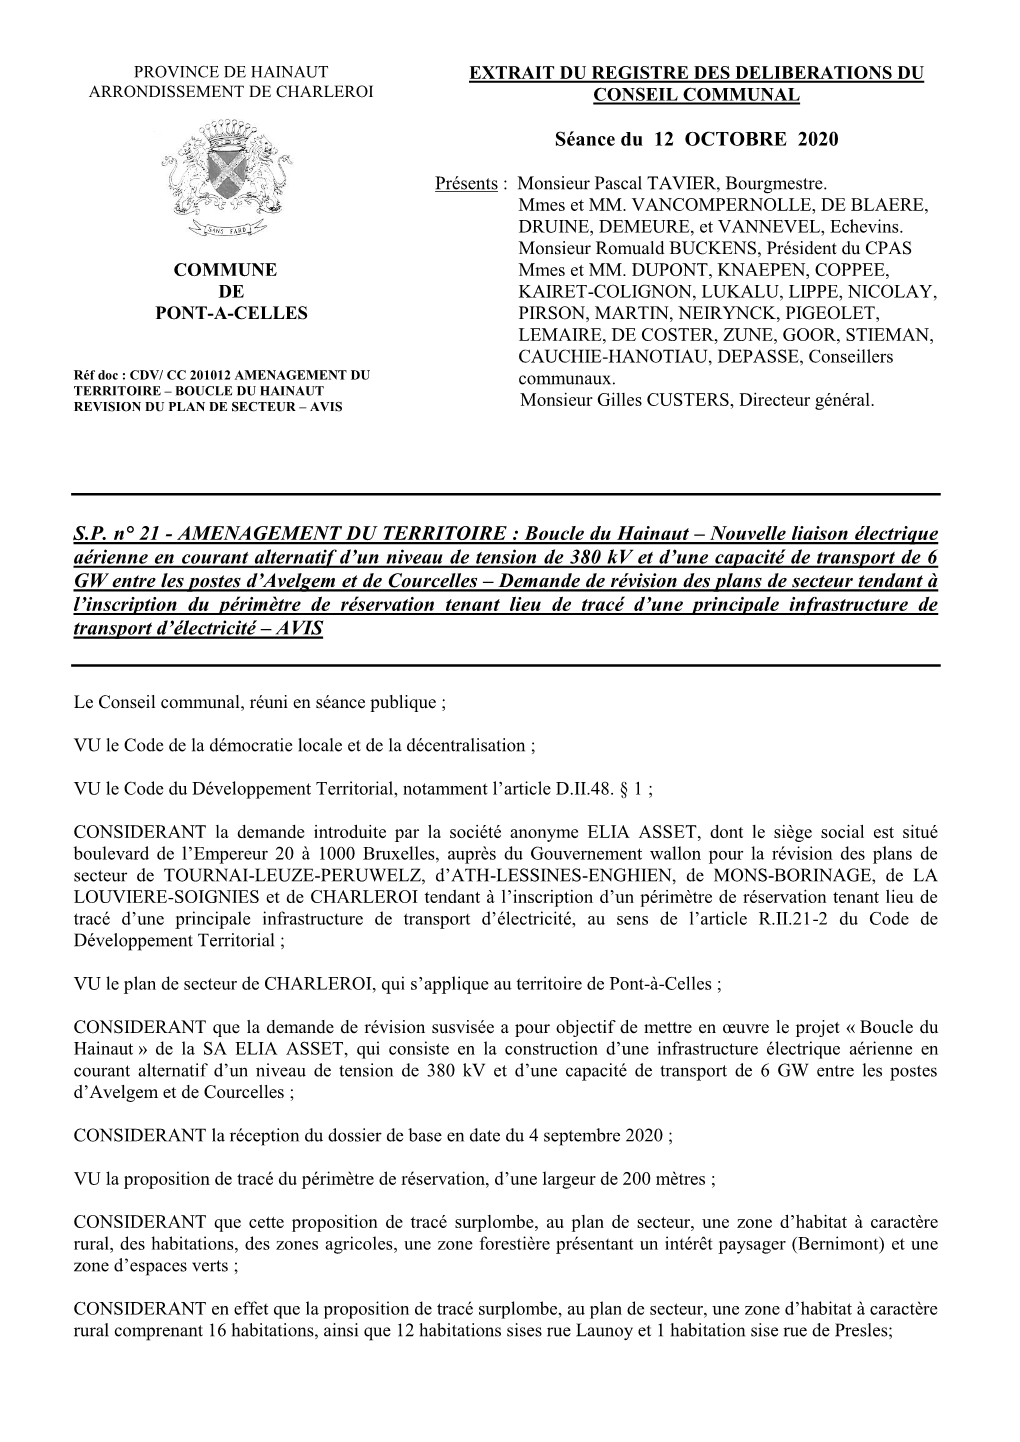 Province De Hainaut Extrait Du Registre Des Deliberations Du Arrondissement De Charleroi Conseil Communal